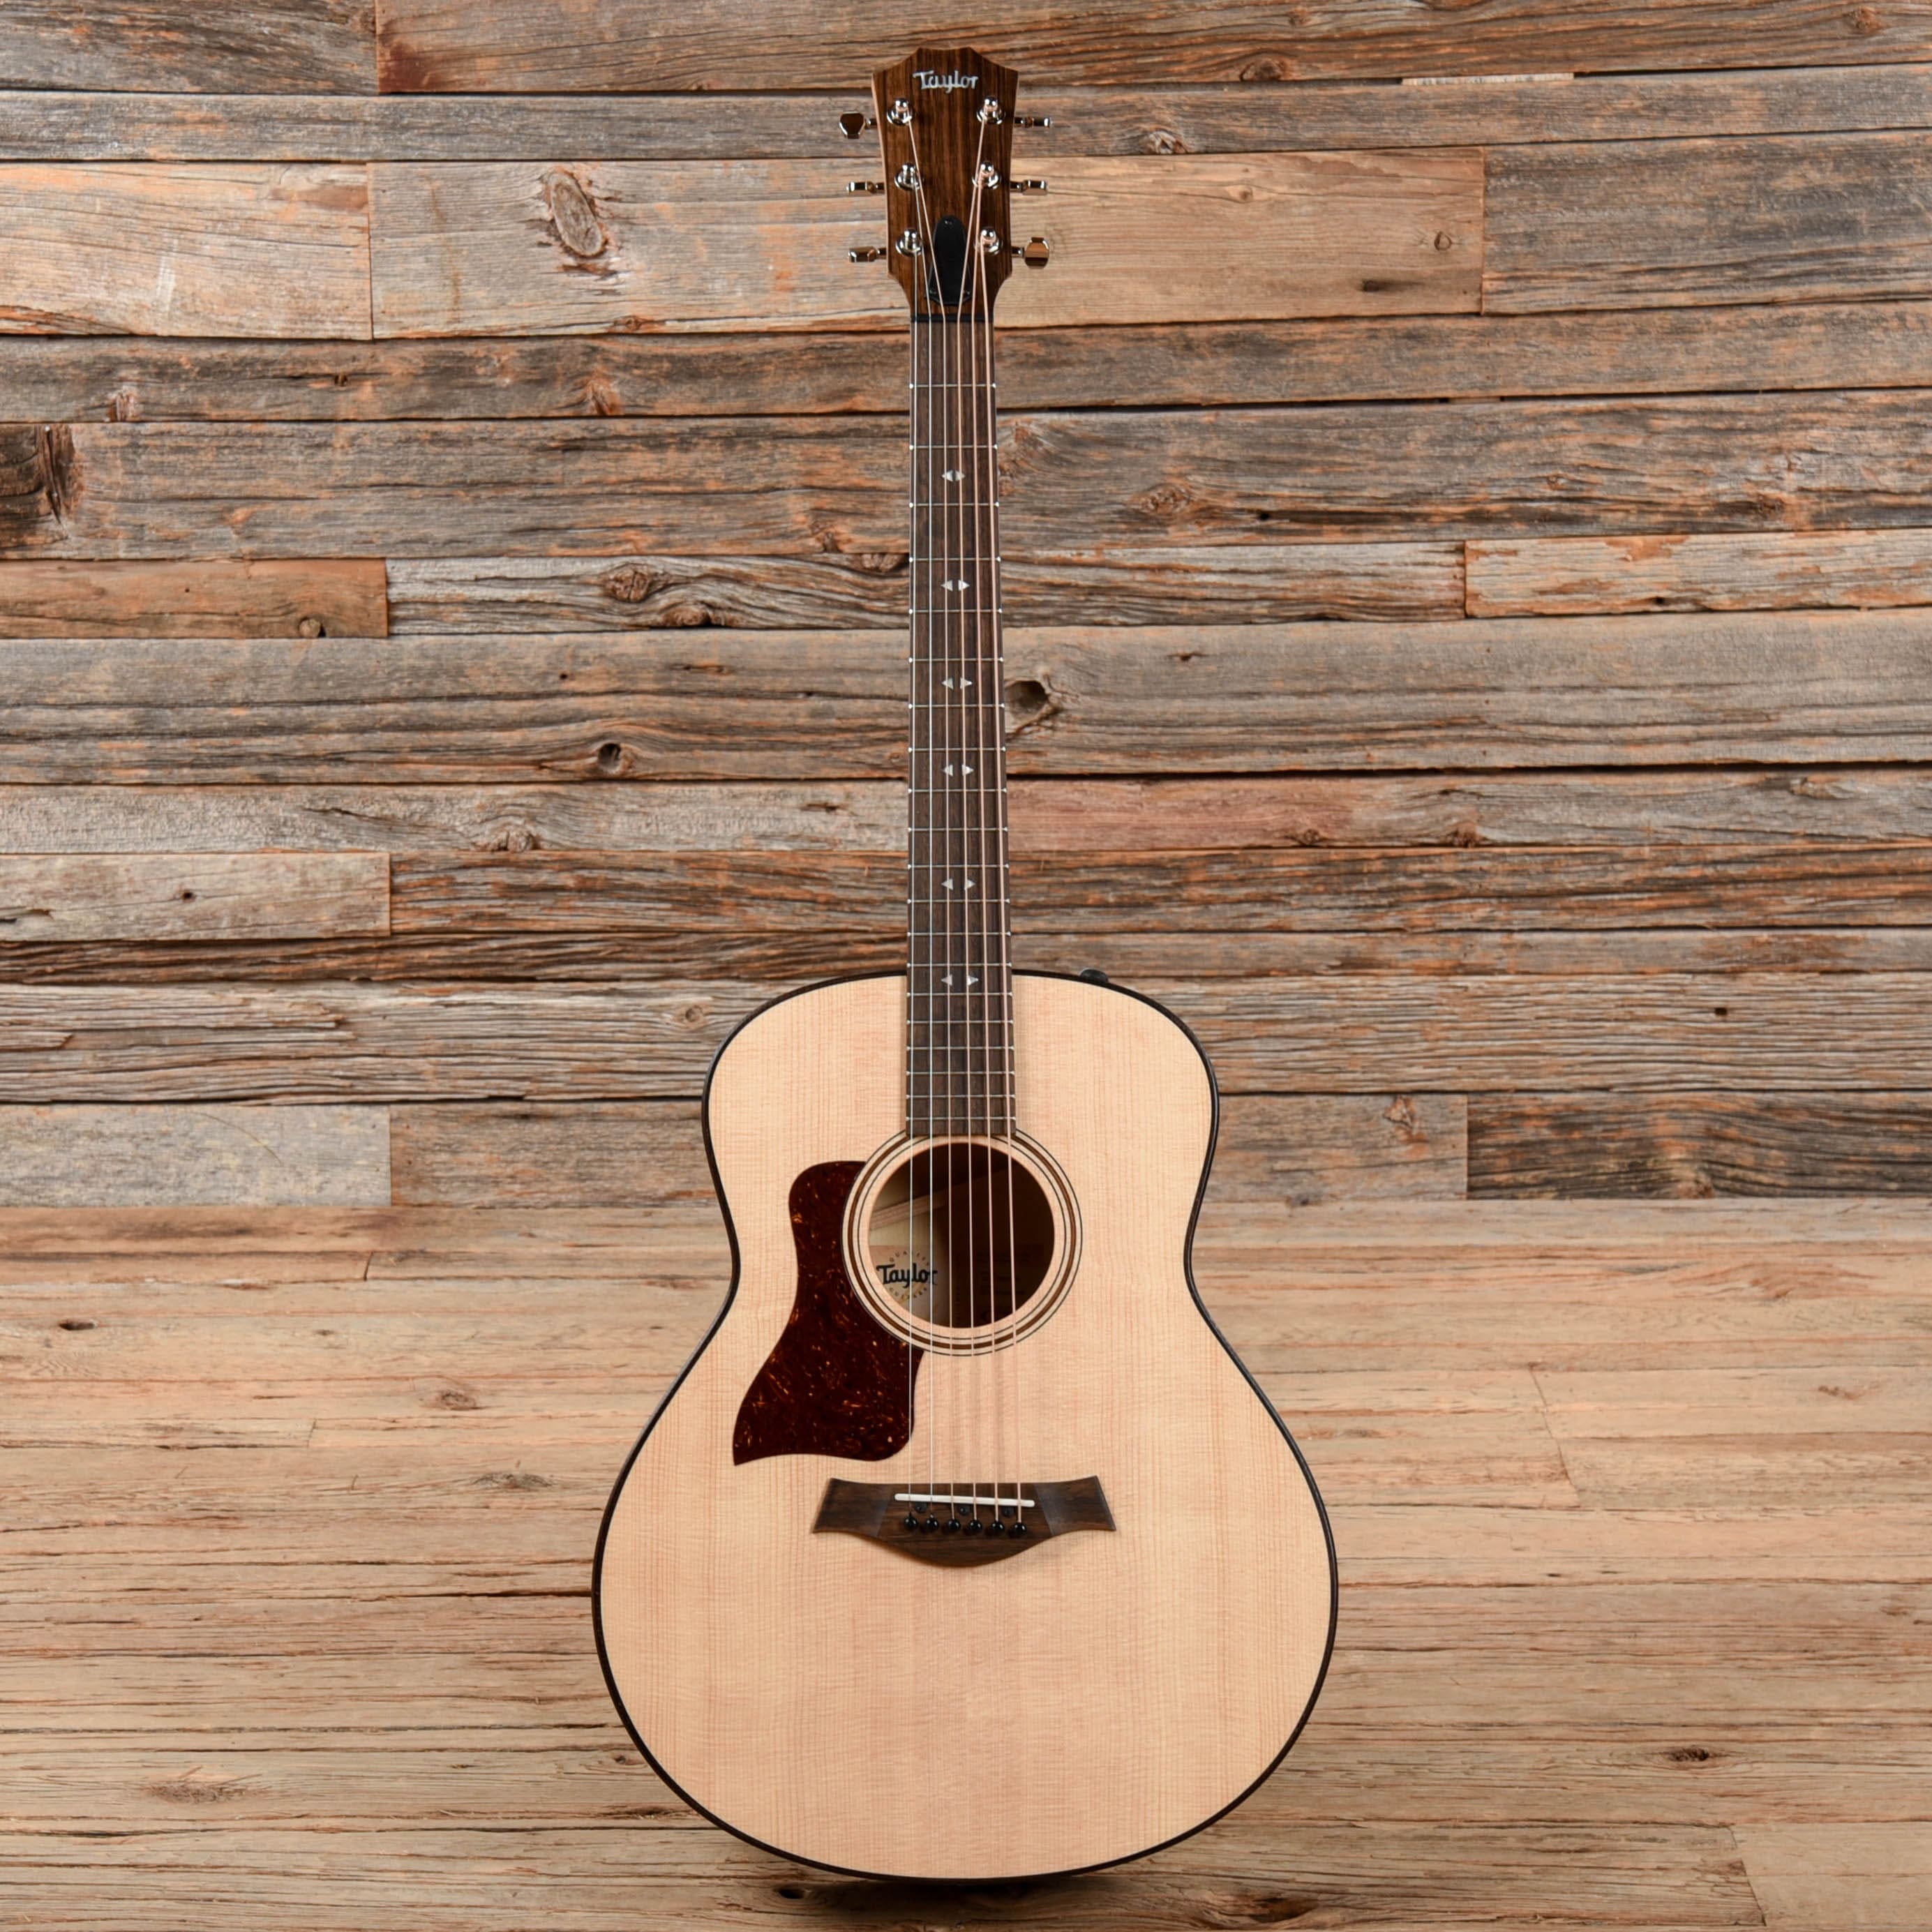 Taylor GTe Sitka/Urban Ash ES2 LEFTY Acoustic Guitars / Left-Handed